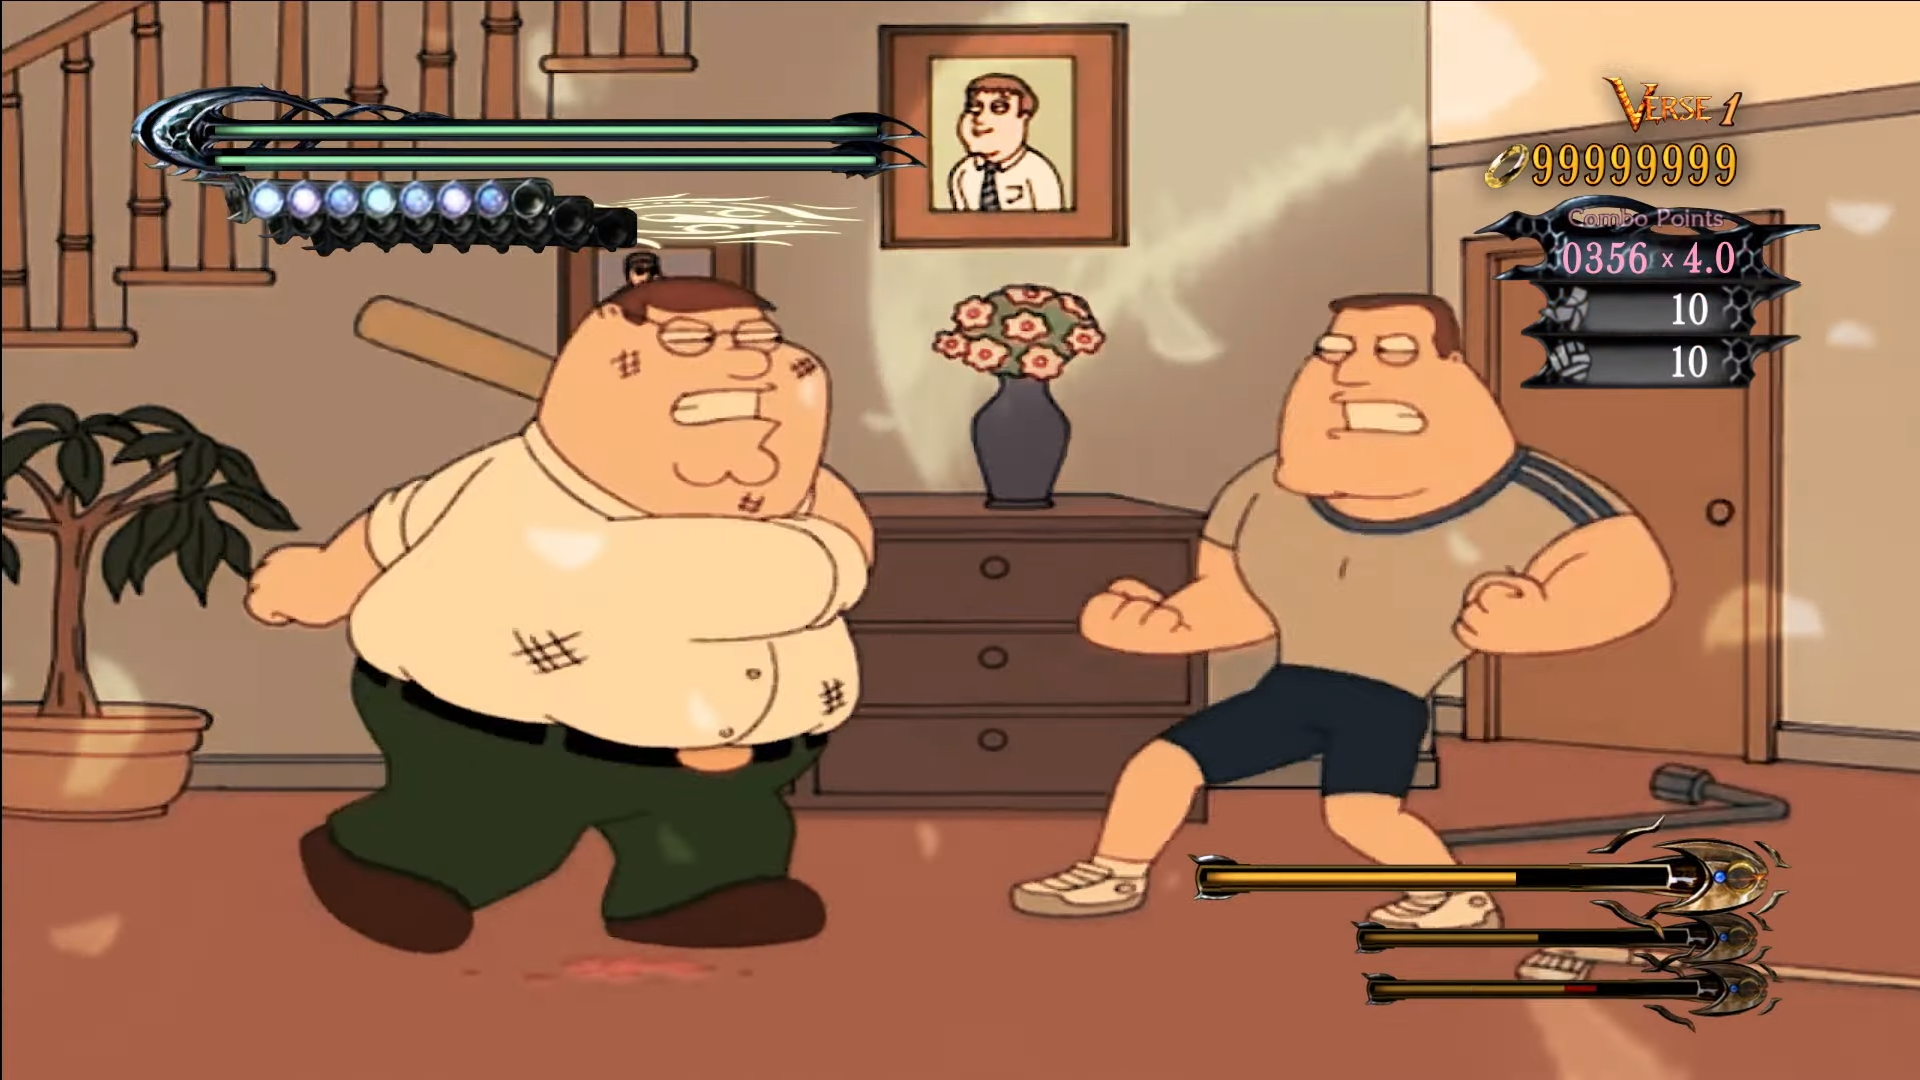 Imagem para Vídeo hilariante mistura Bayonetta com Family Guy